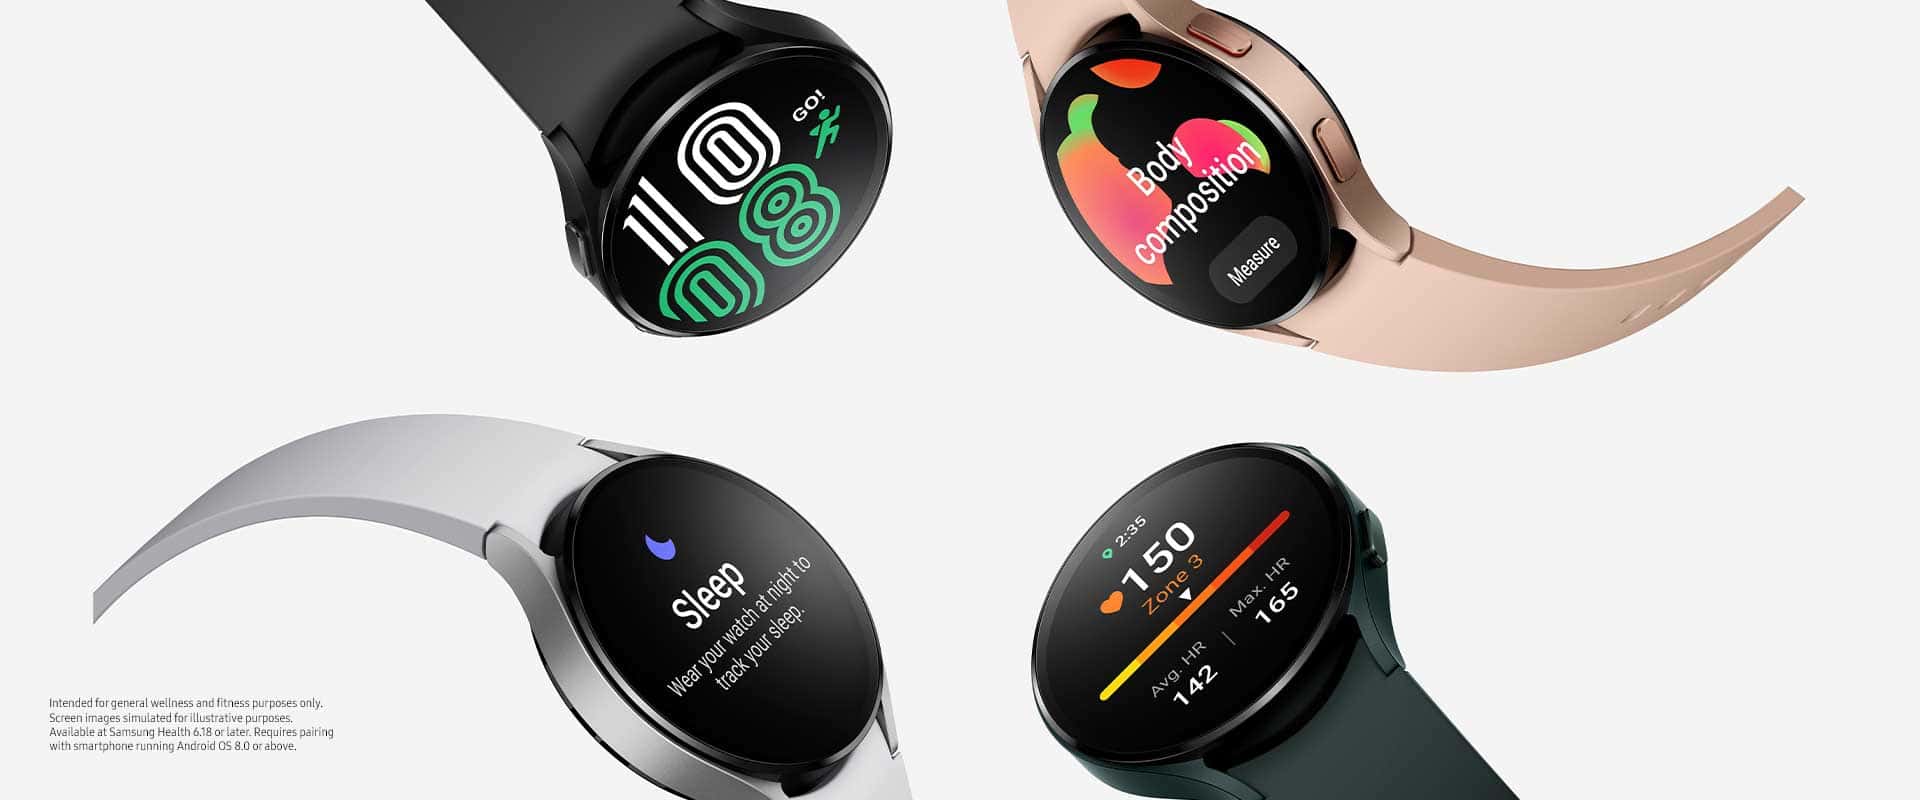 거래 알림: Amazon에서 할인된 Samsung Galaxy Watch 4